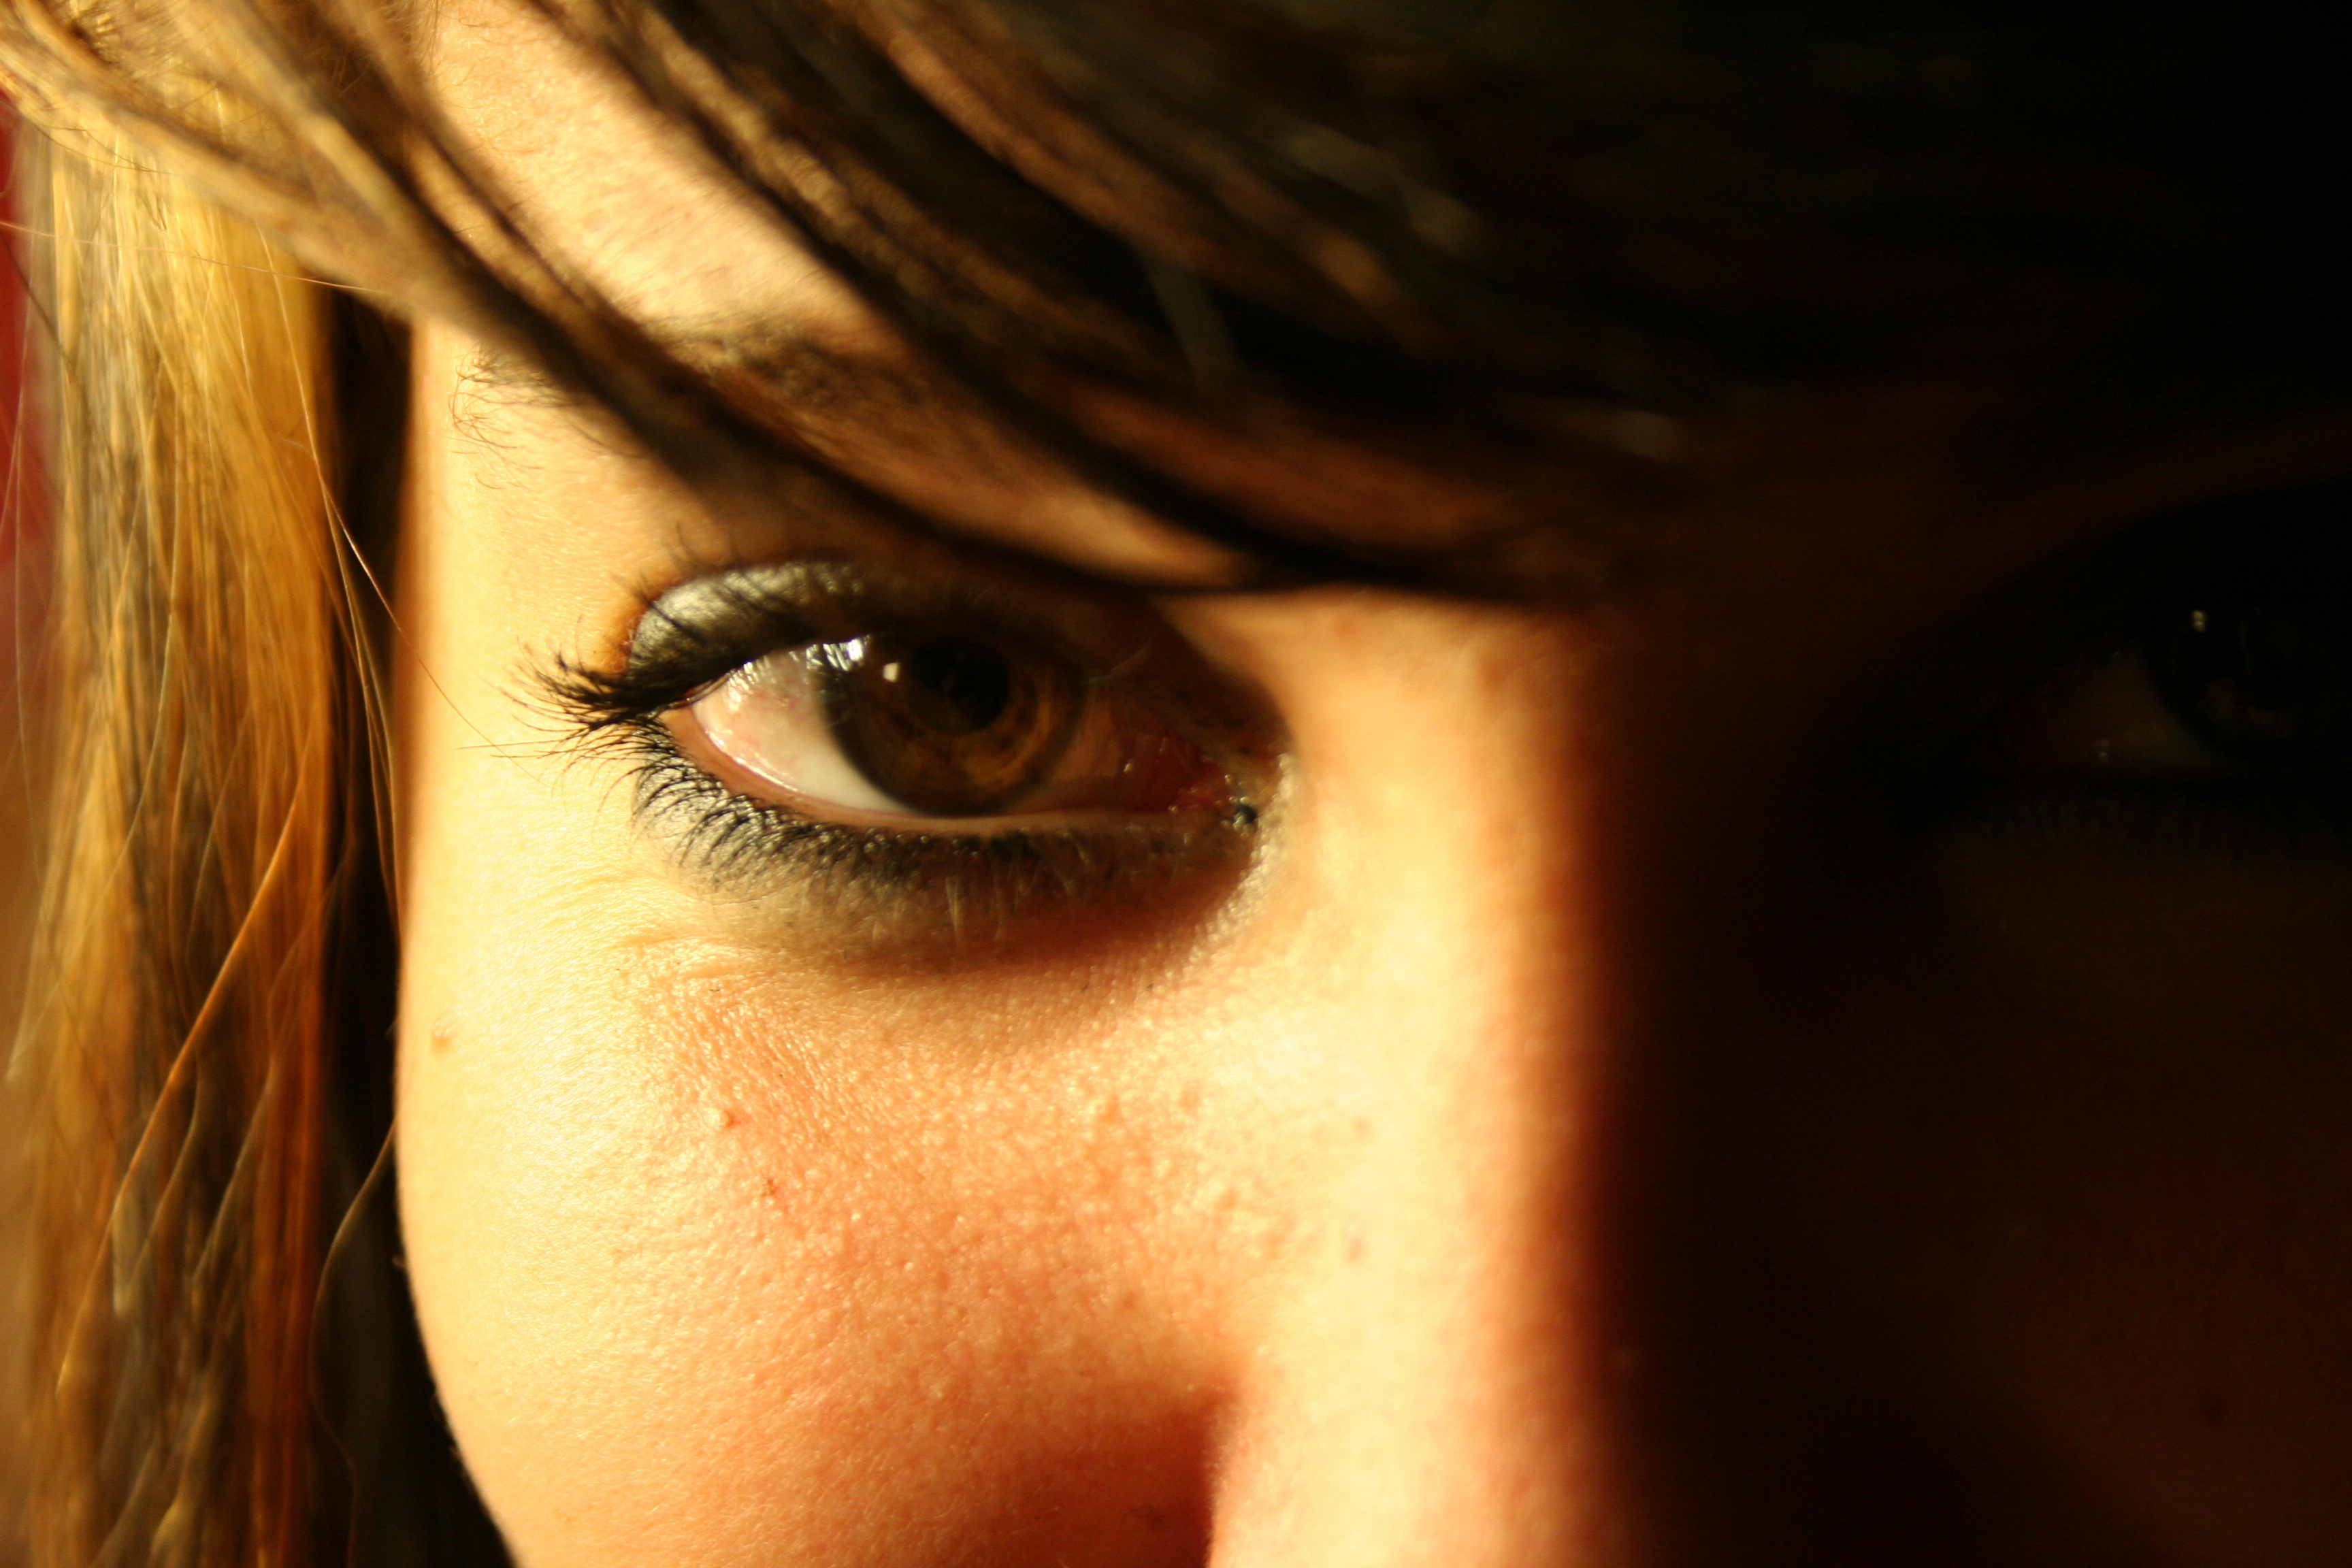 Consultar oftalmologista regularmente pode prevenir câncer nos olhos